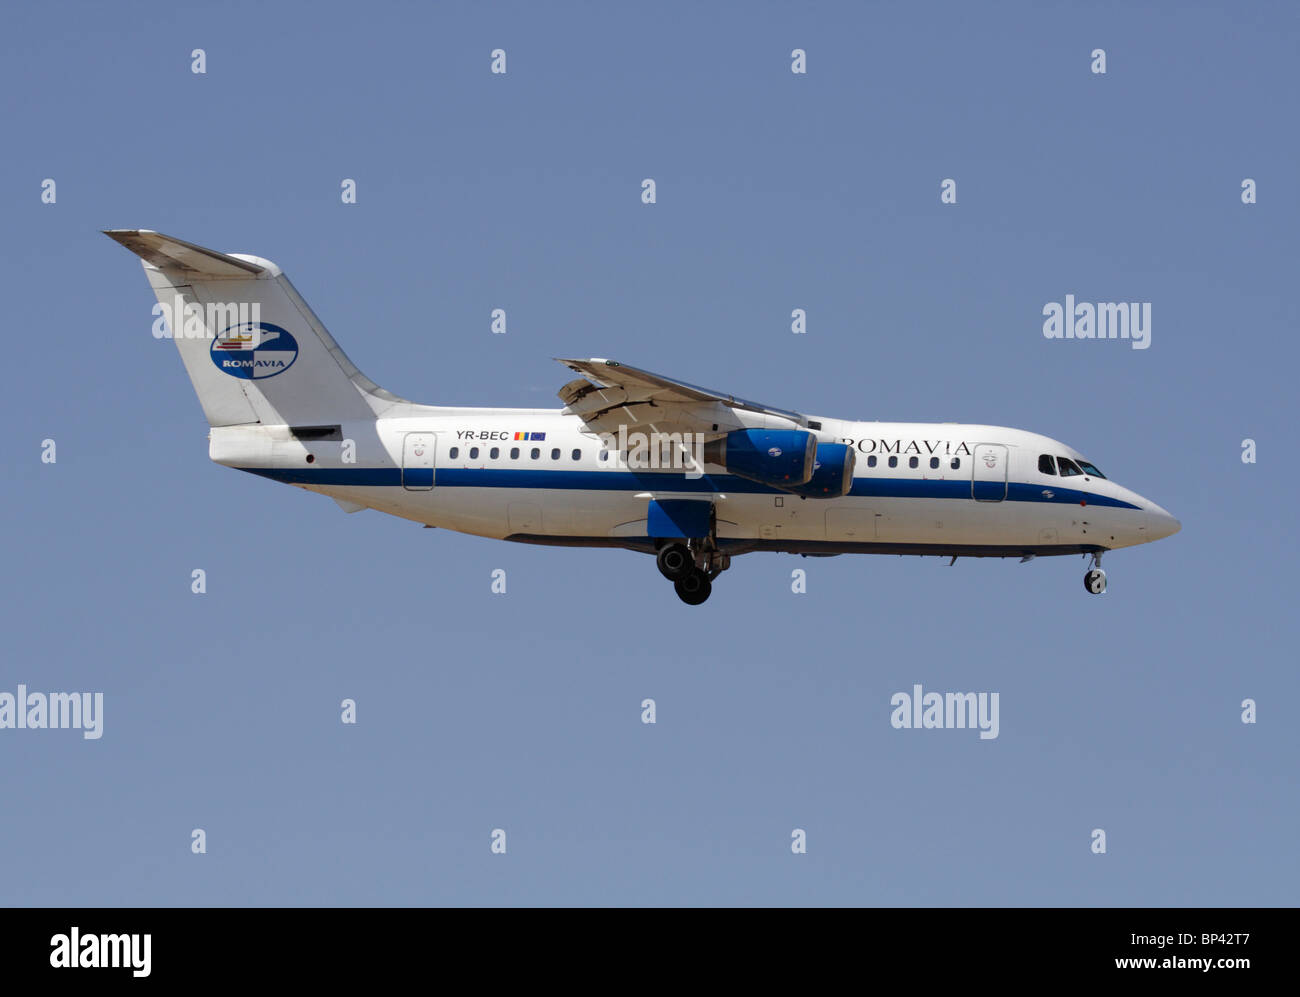 Romavia British Aerospace 146-200 piccolo aereo di linea sulla rotta di avvicinamento. Vista laterale. Foto Stock